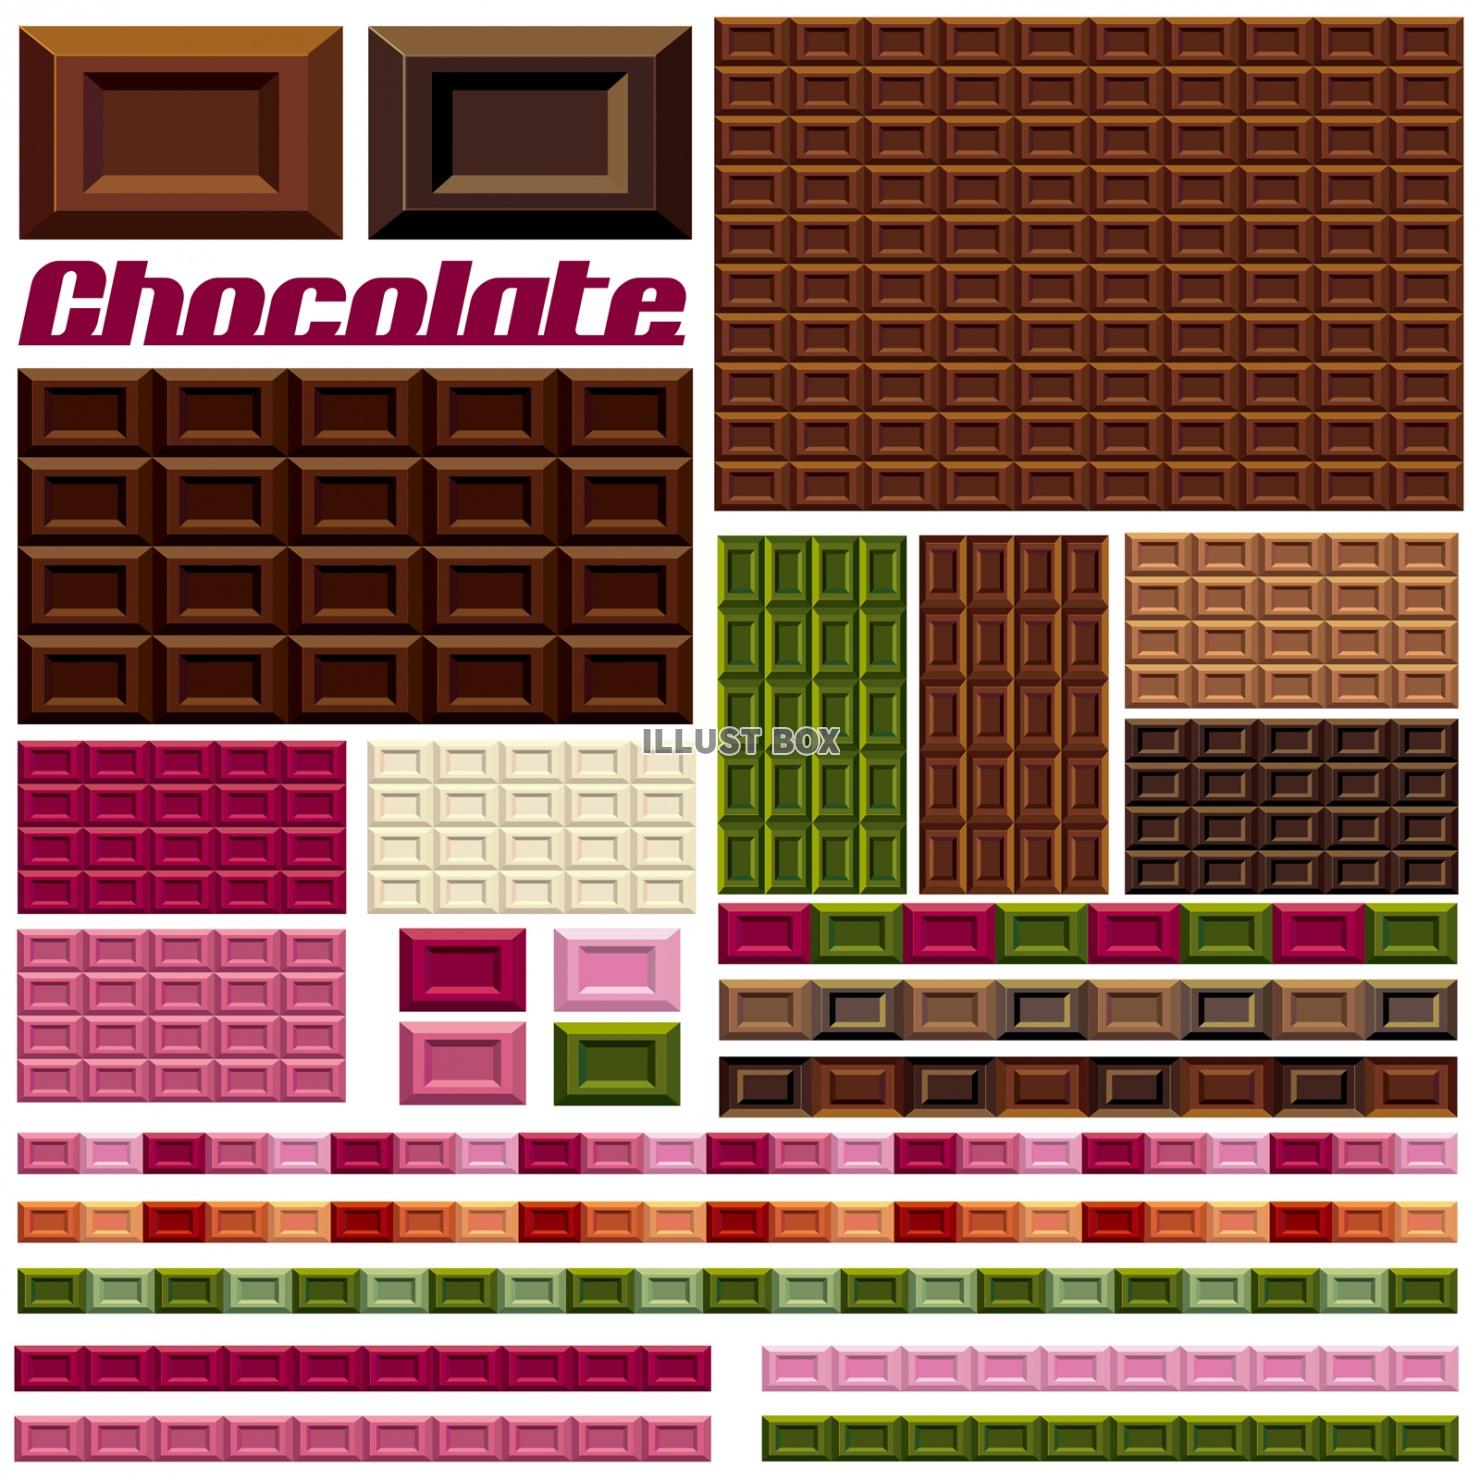 チョコレート,板チョコ,イラスト,チョコ,シンプル,シルエッ...